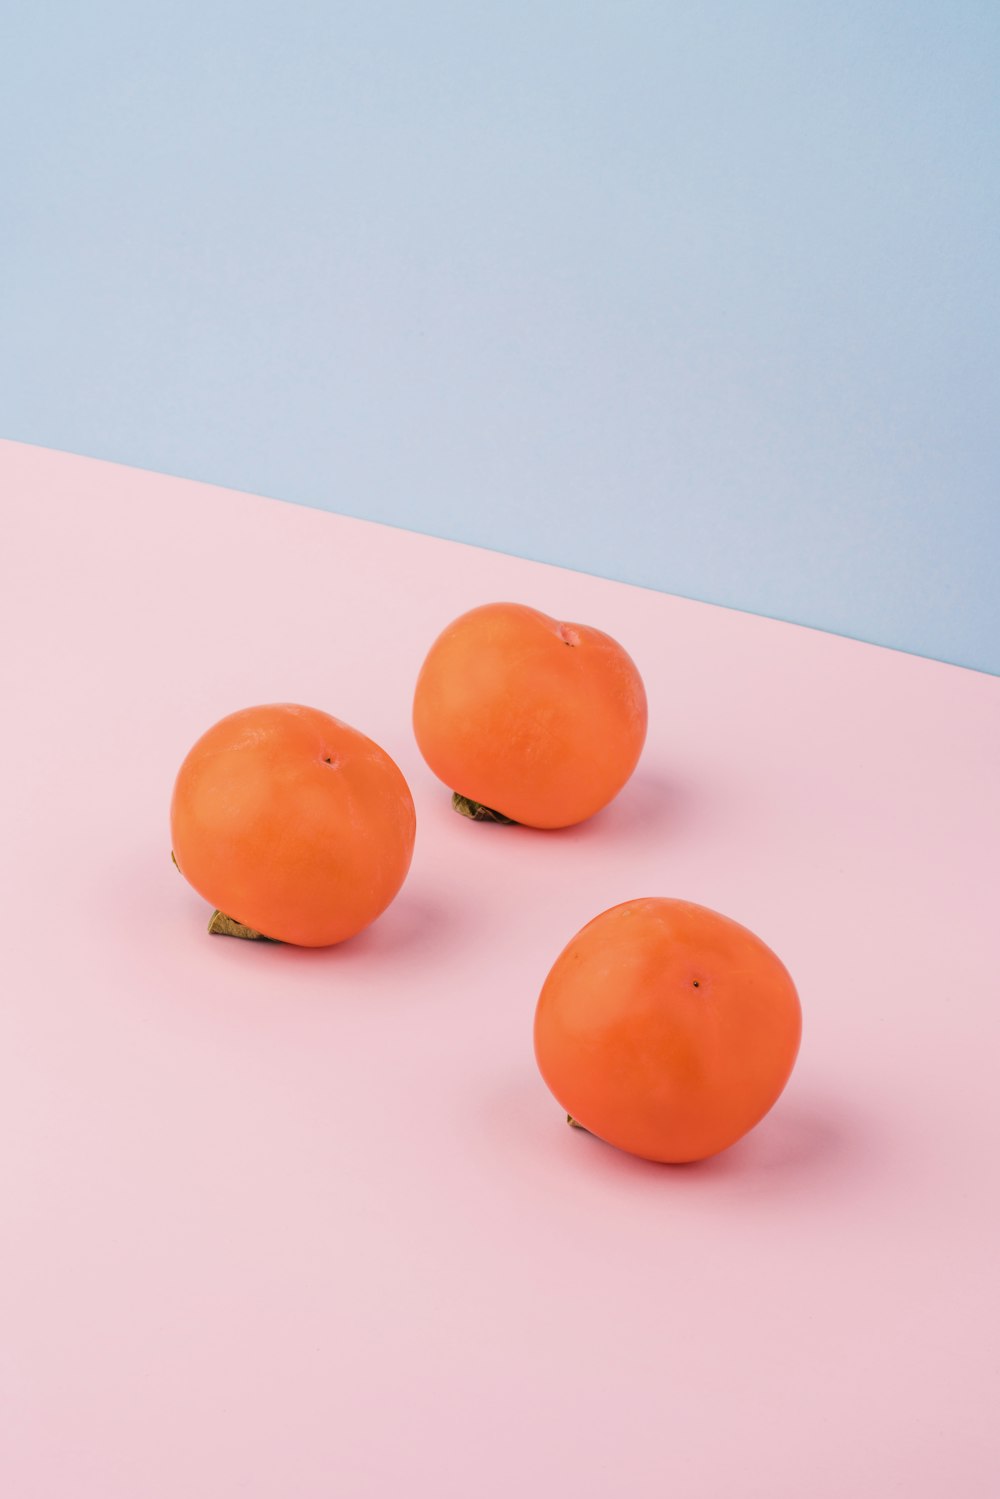 분홍색 표면에 3 개의 주황색 과일